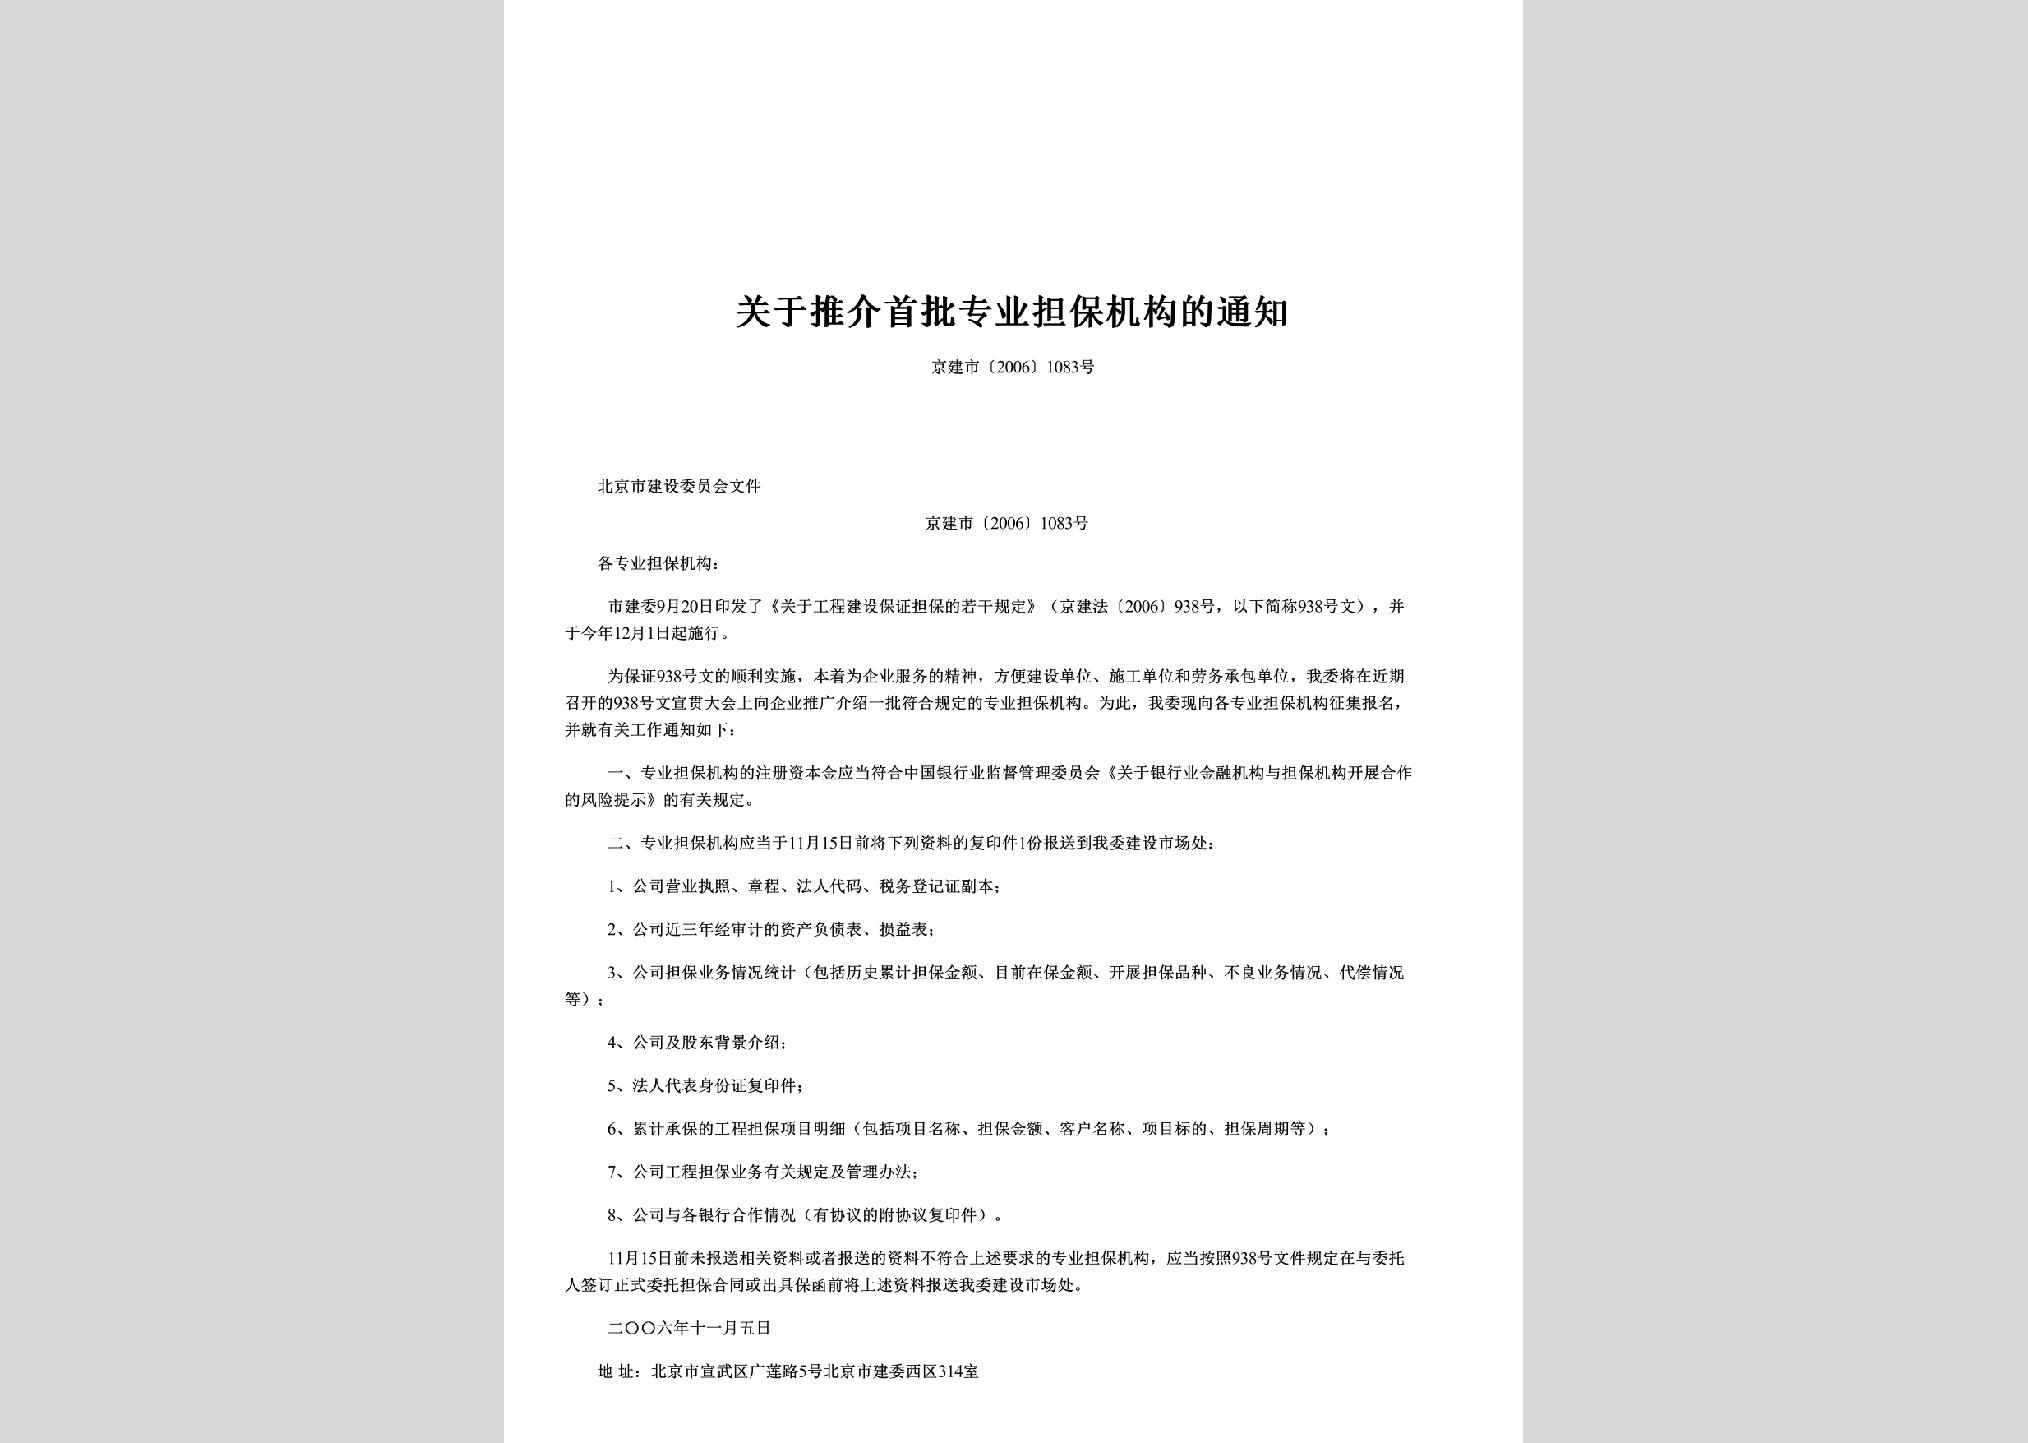 京建市[2006]1083号：关于推介首批专业担保机构的通知